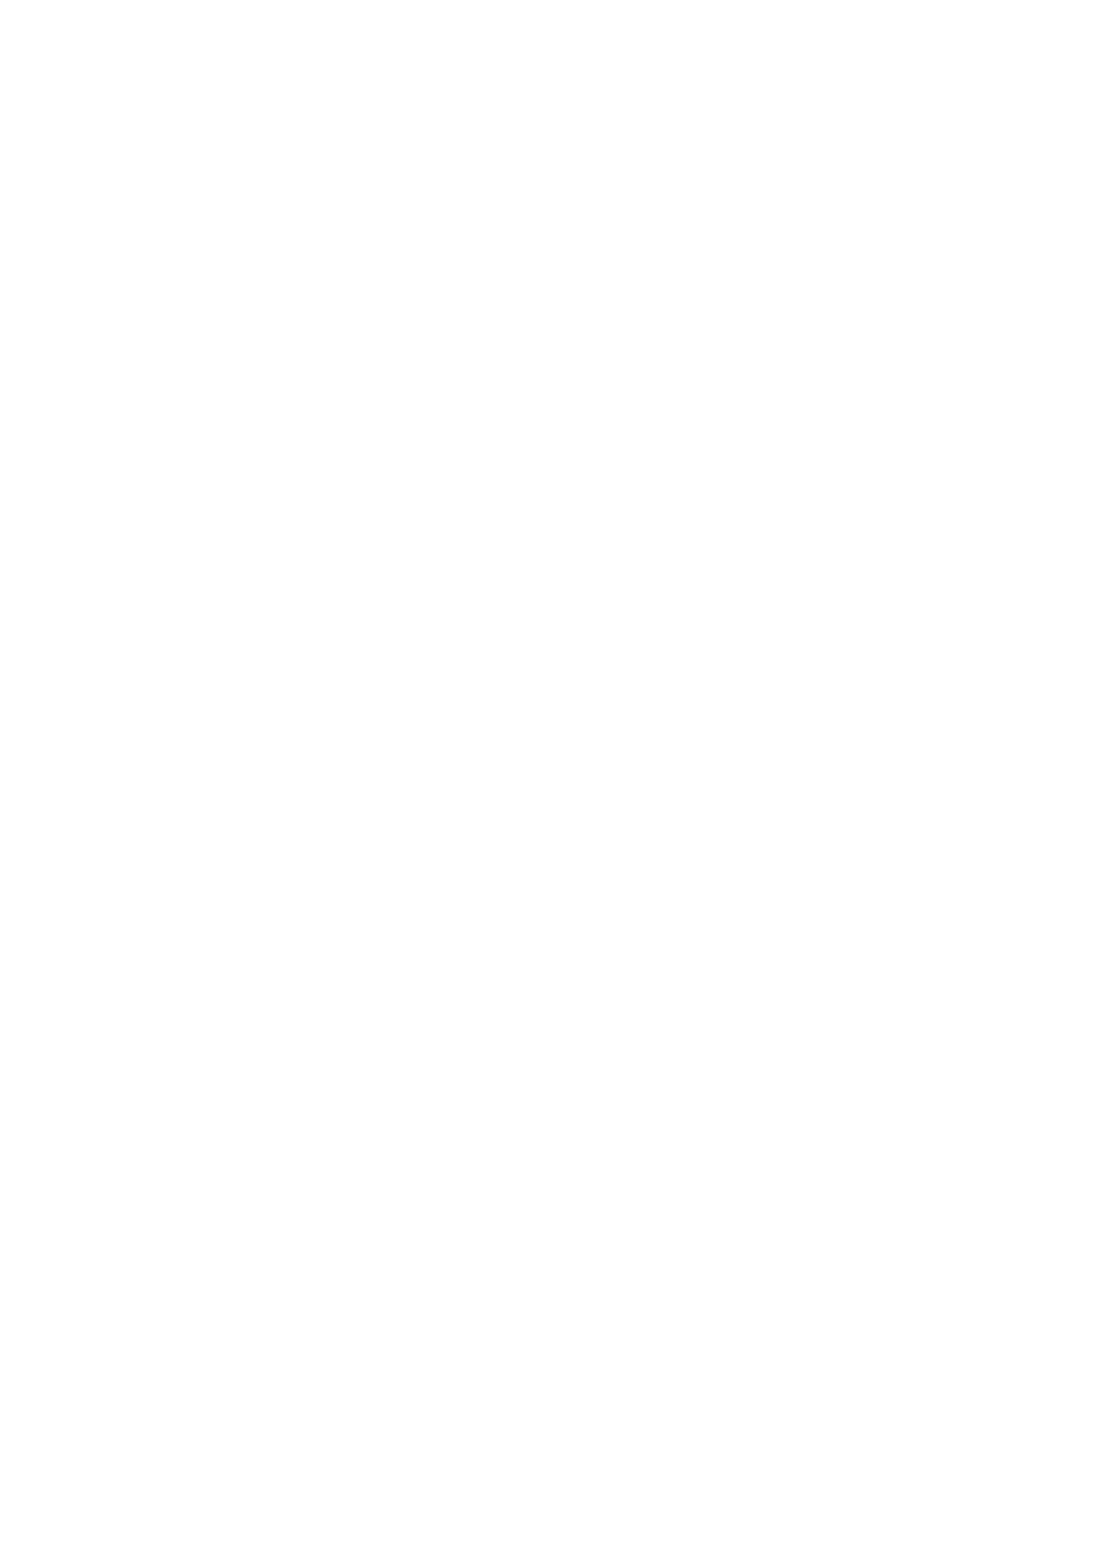 Bachem logo for dark backgrounds (transparent PNG)